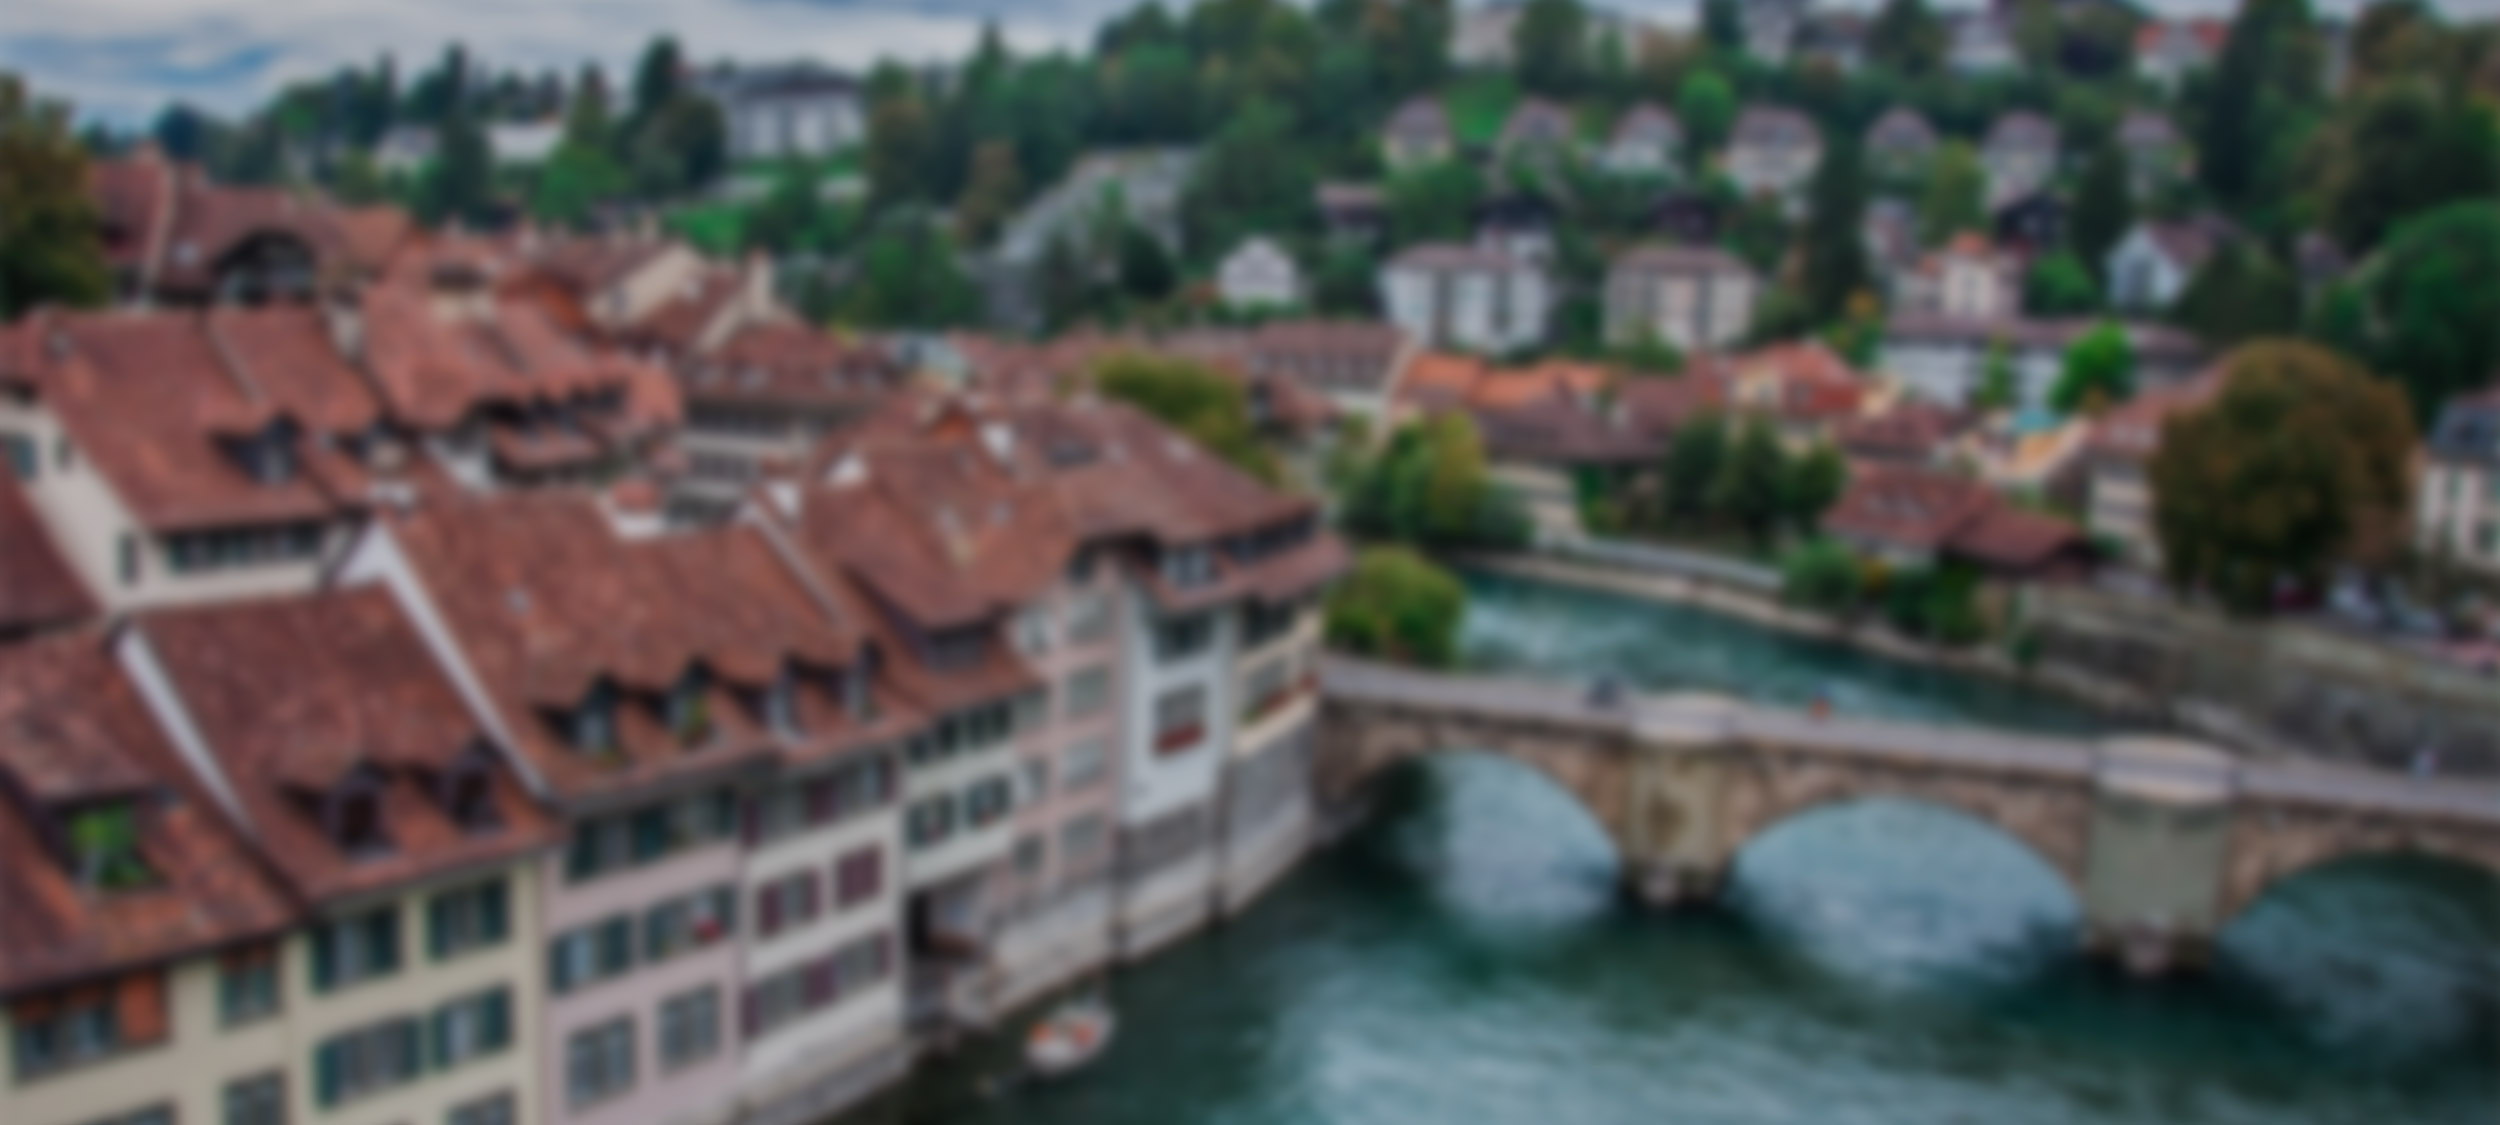 Bern, Bundesstadt der Schweiz. Calidario bietet Ihnen Kalender für die Schweiz und die ganze Welt.